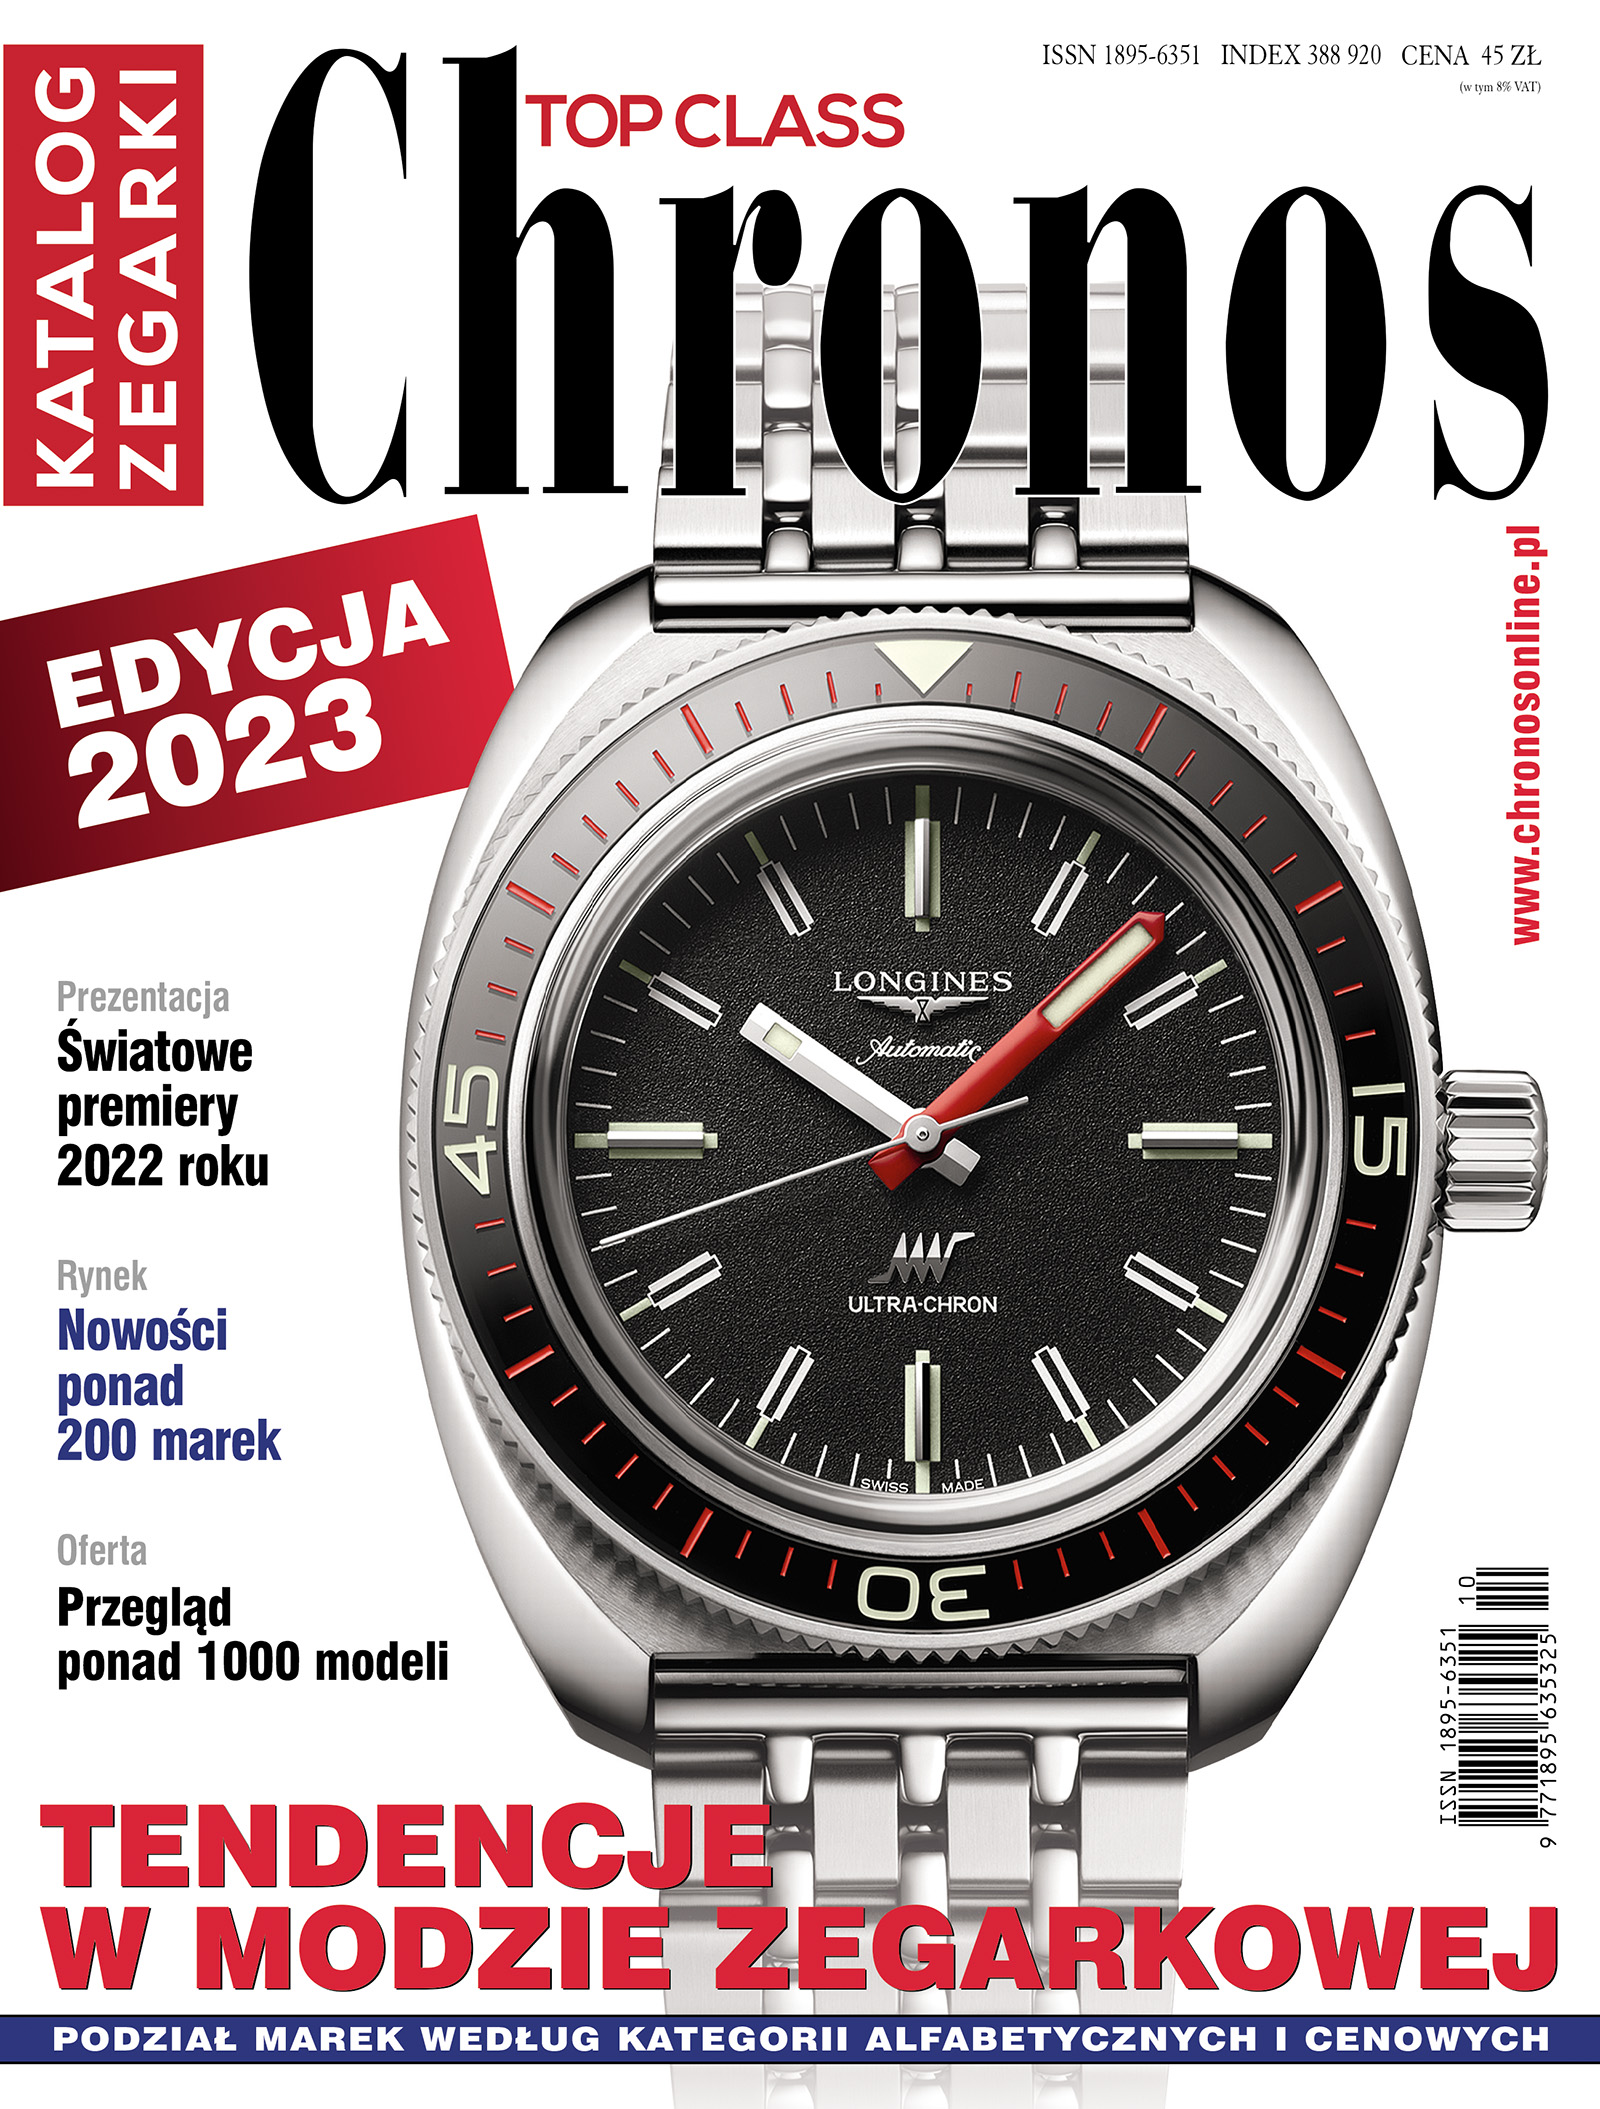 Nowe wydanie - Chronos Katalog edycja 2023